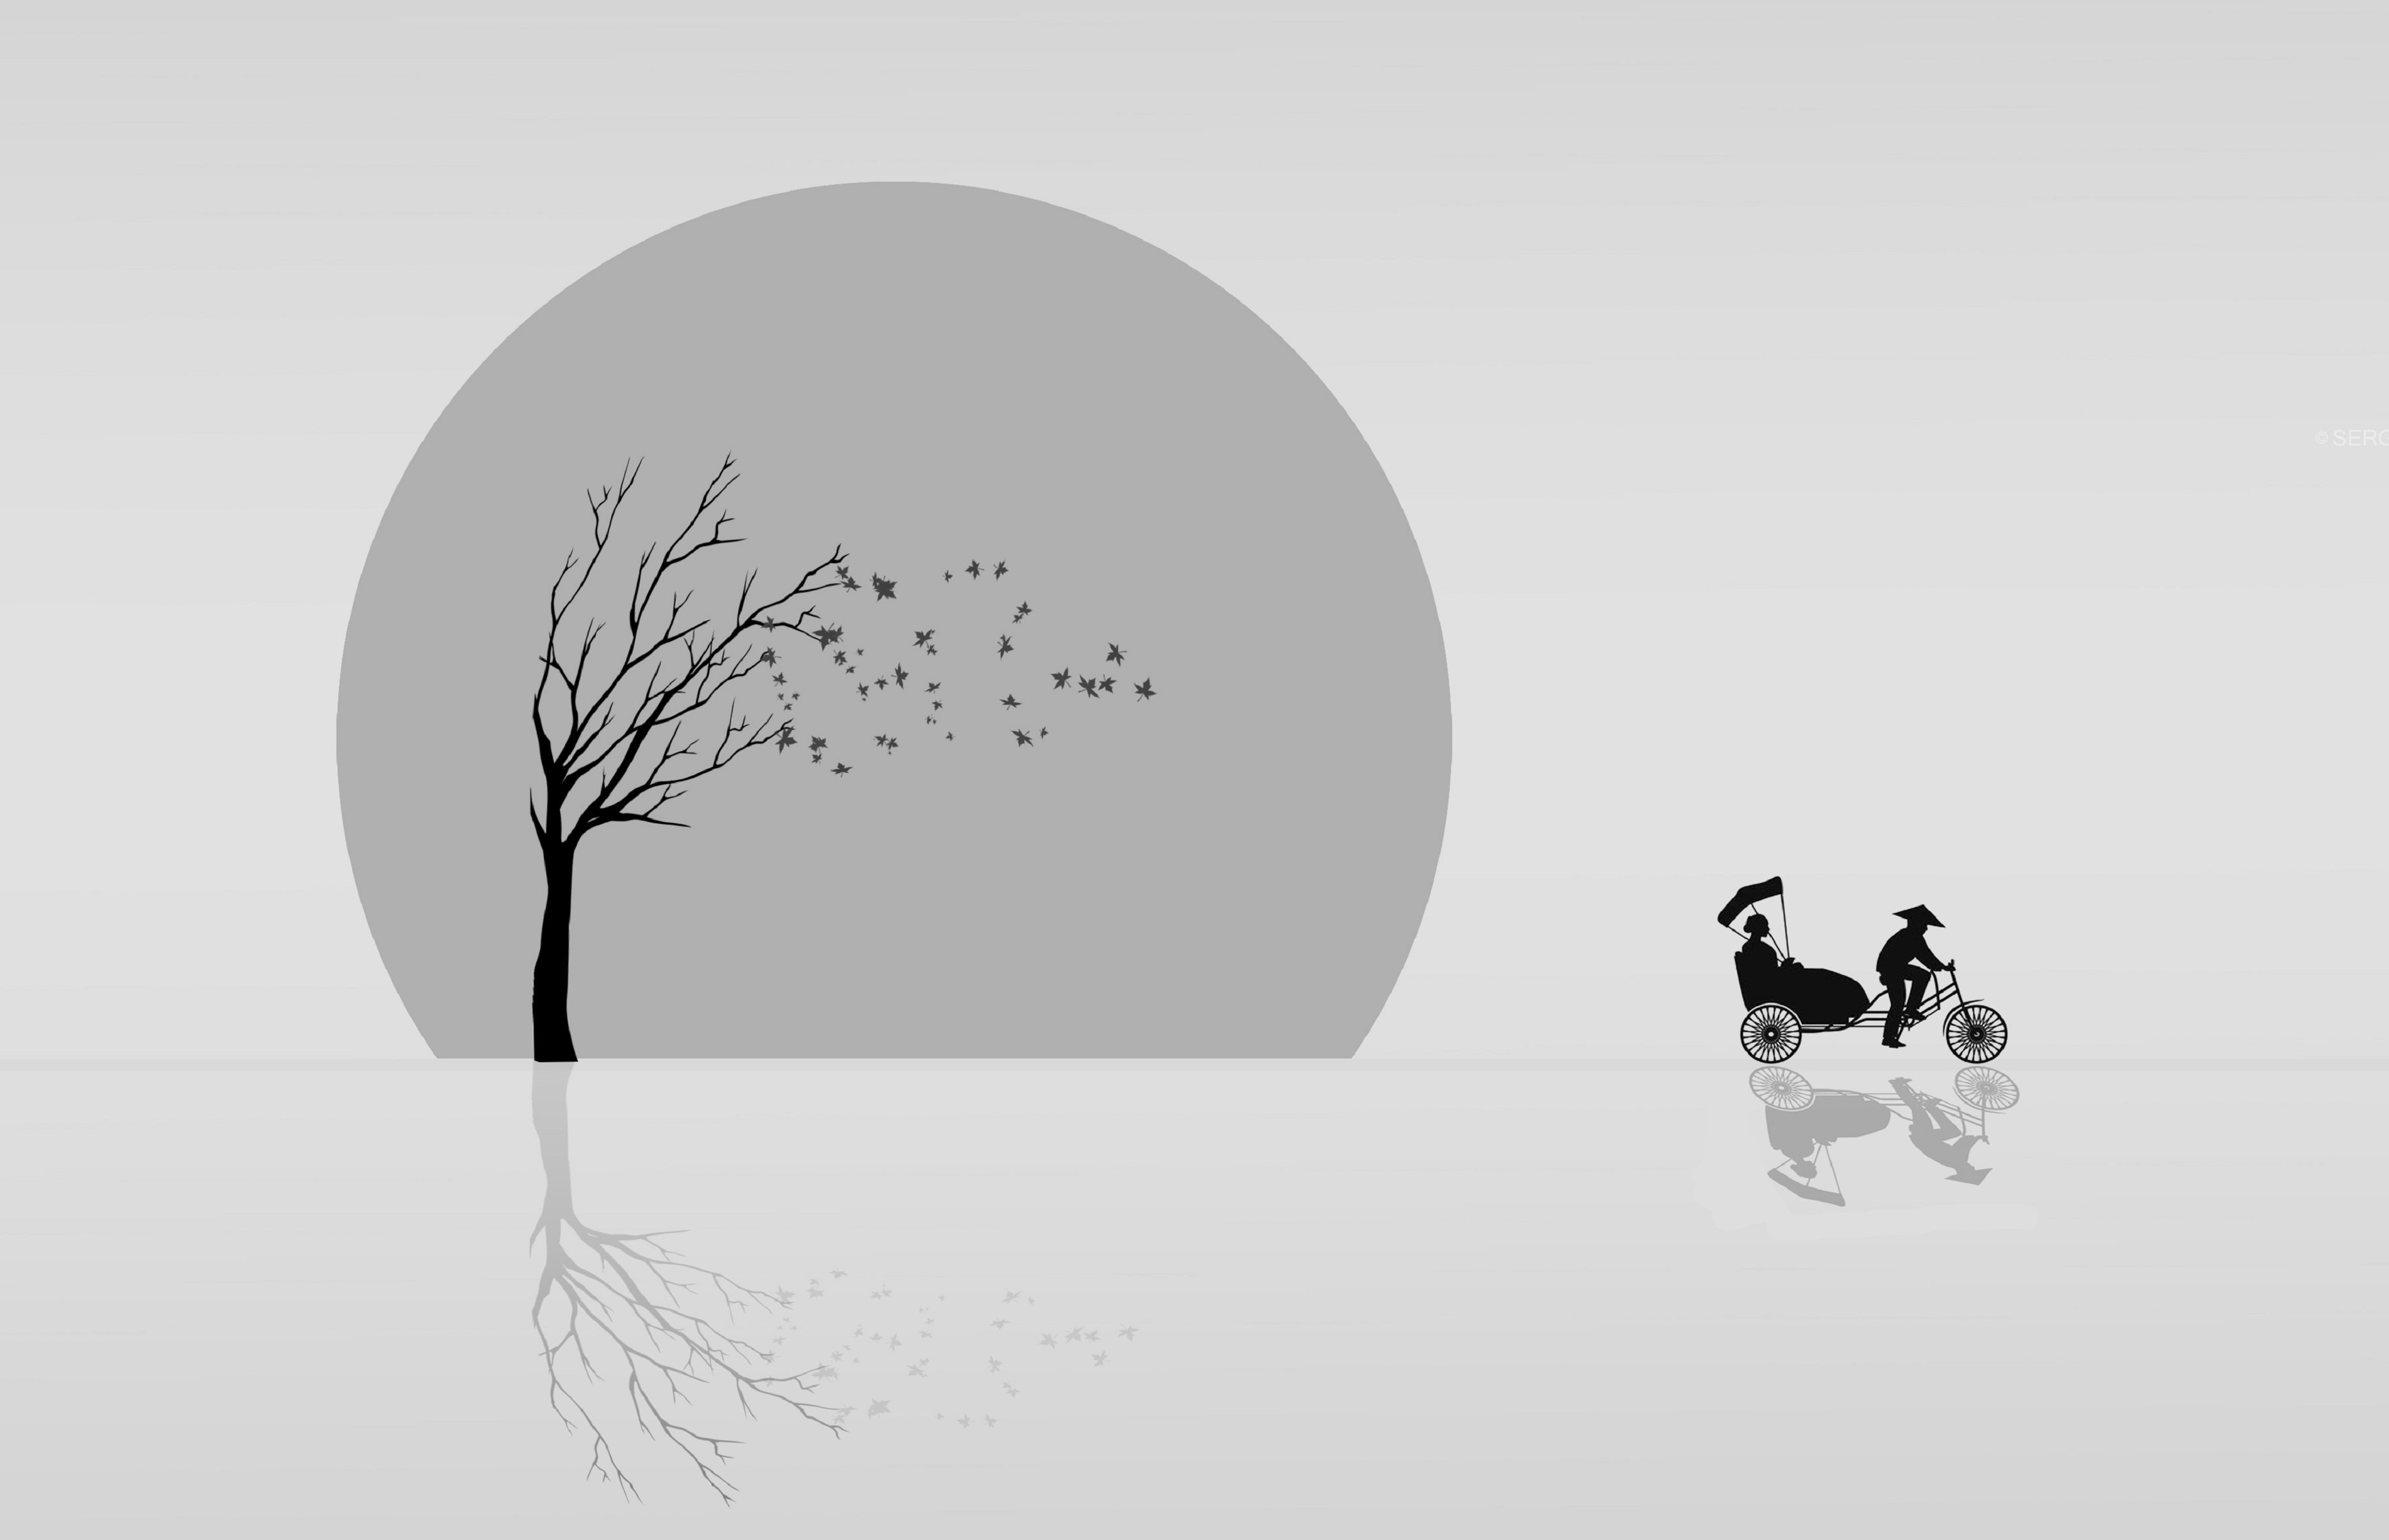 осень, природа, дерево, солнце, рикша, Sergii Vidov